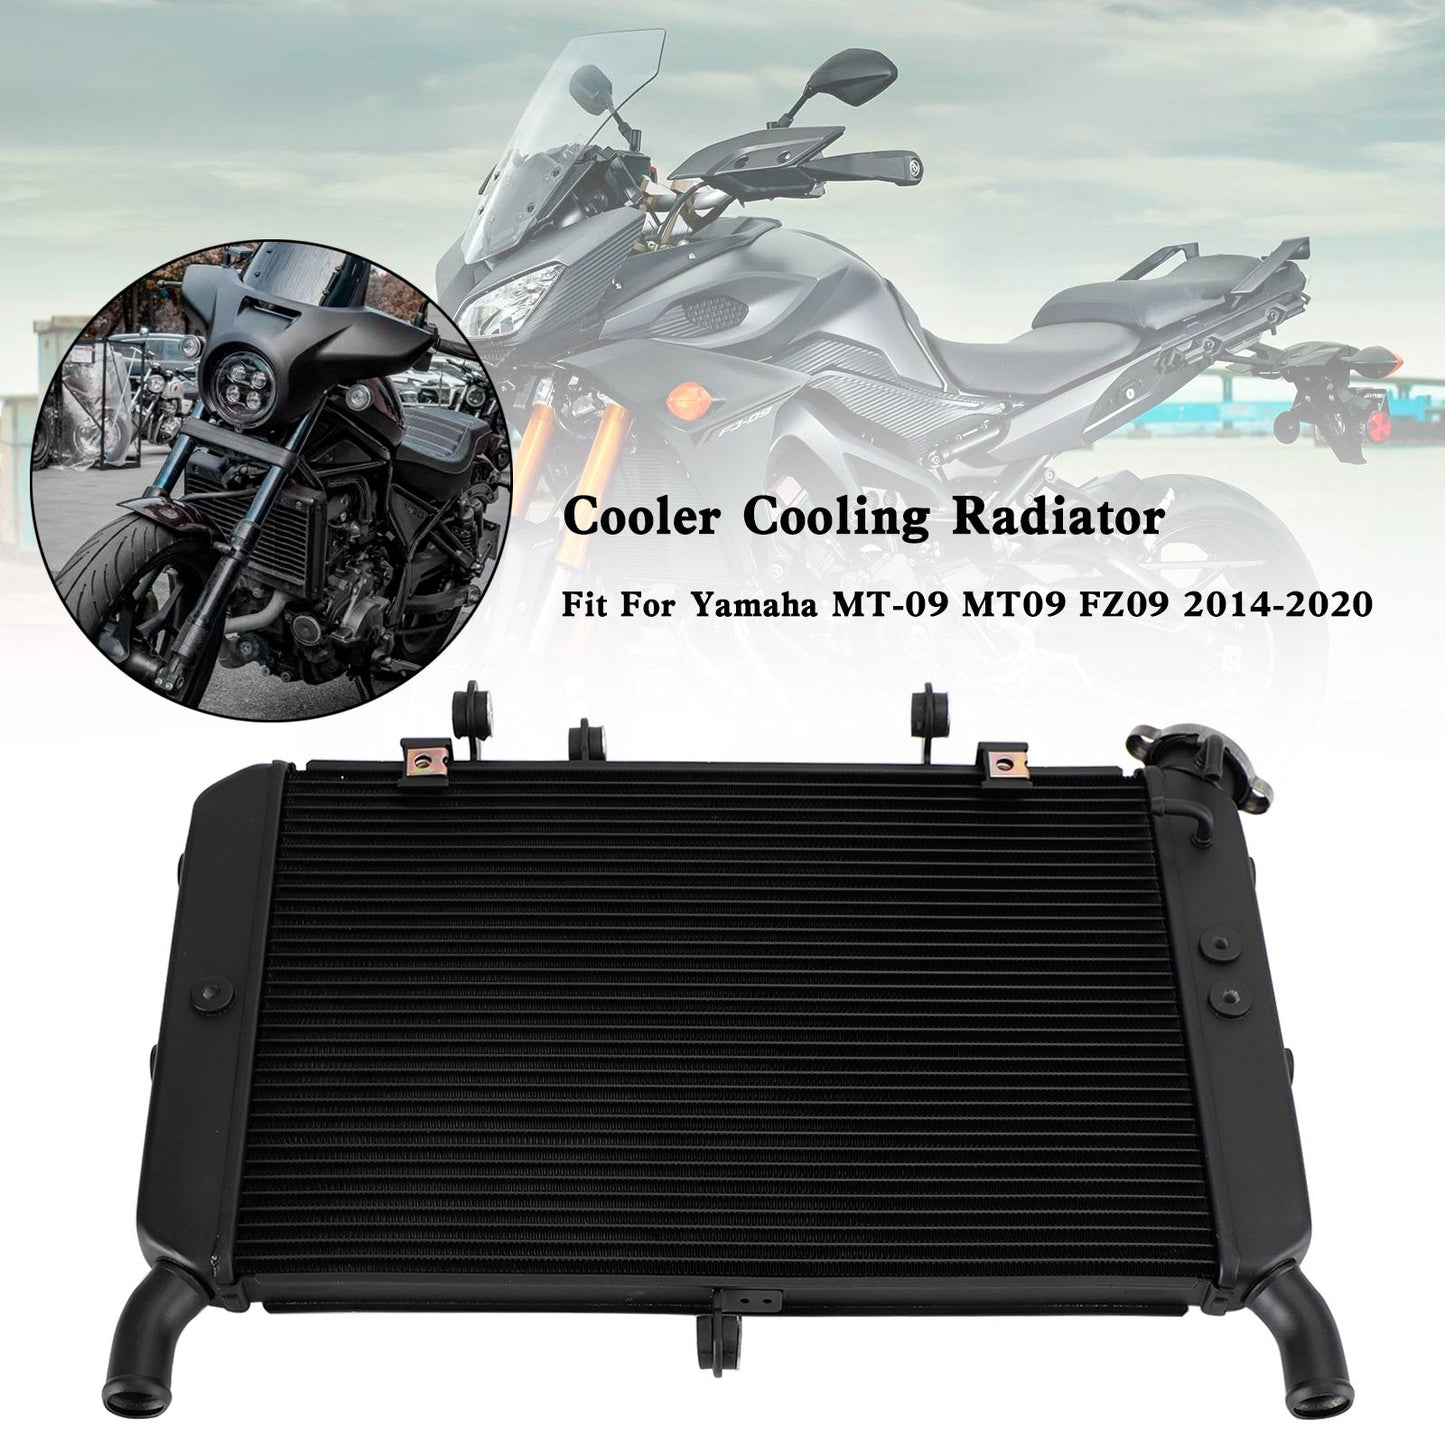 Yamaha TRACER 900 GT (MTT9GTKB) 2019-2020 Radiator Cooler Cooling